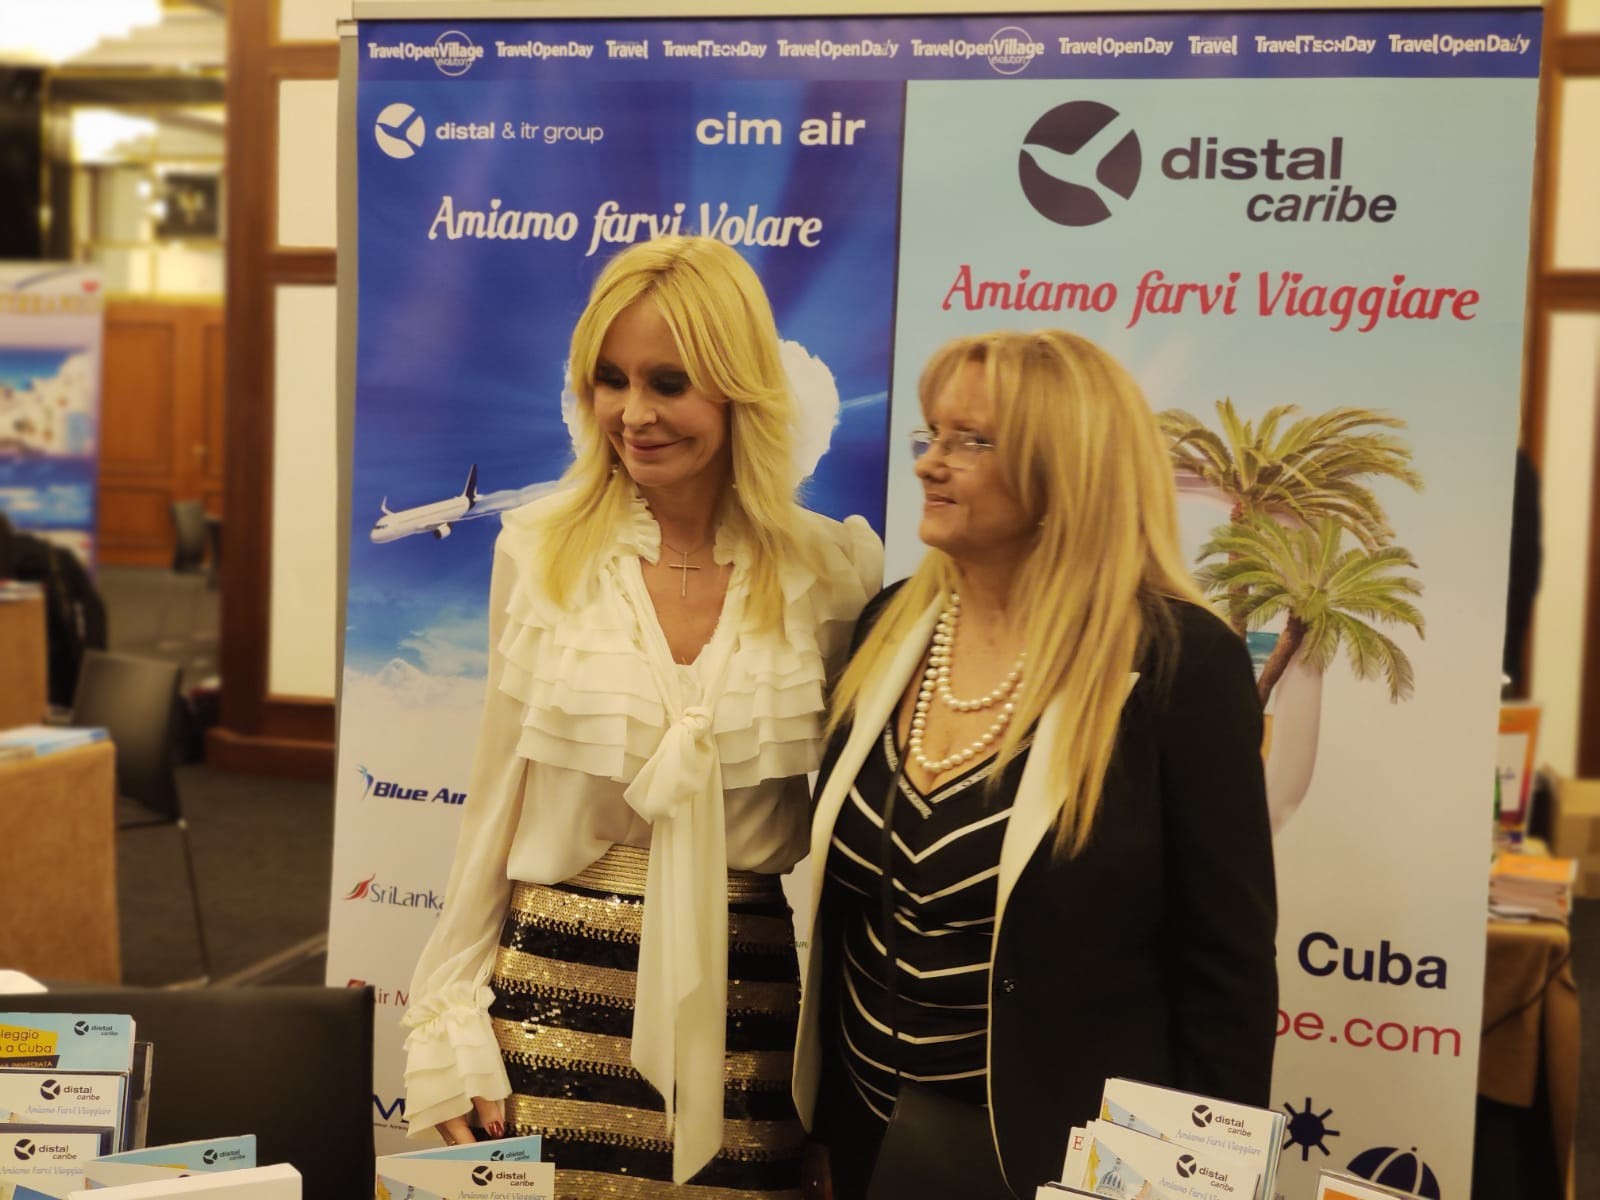 Distal Caribe si presenta al Tove e premia le agenzie di viaggio